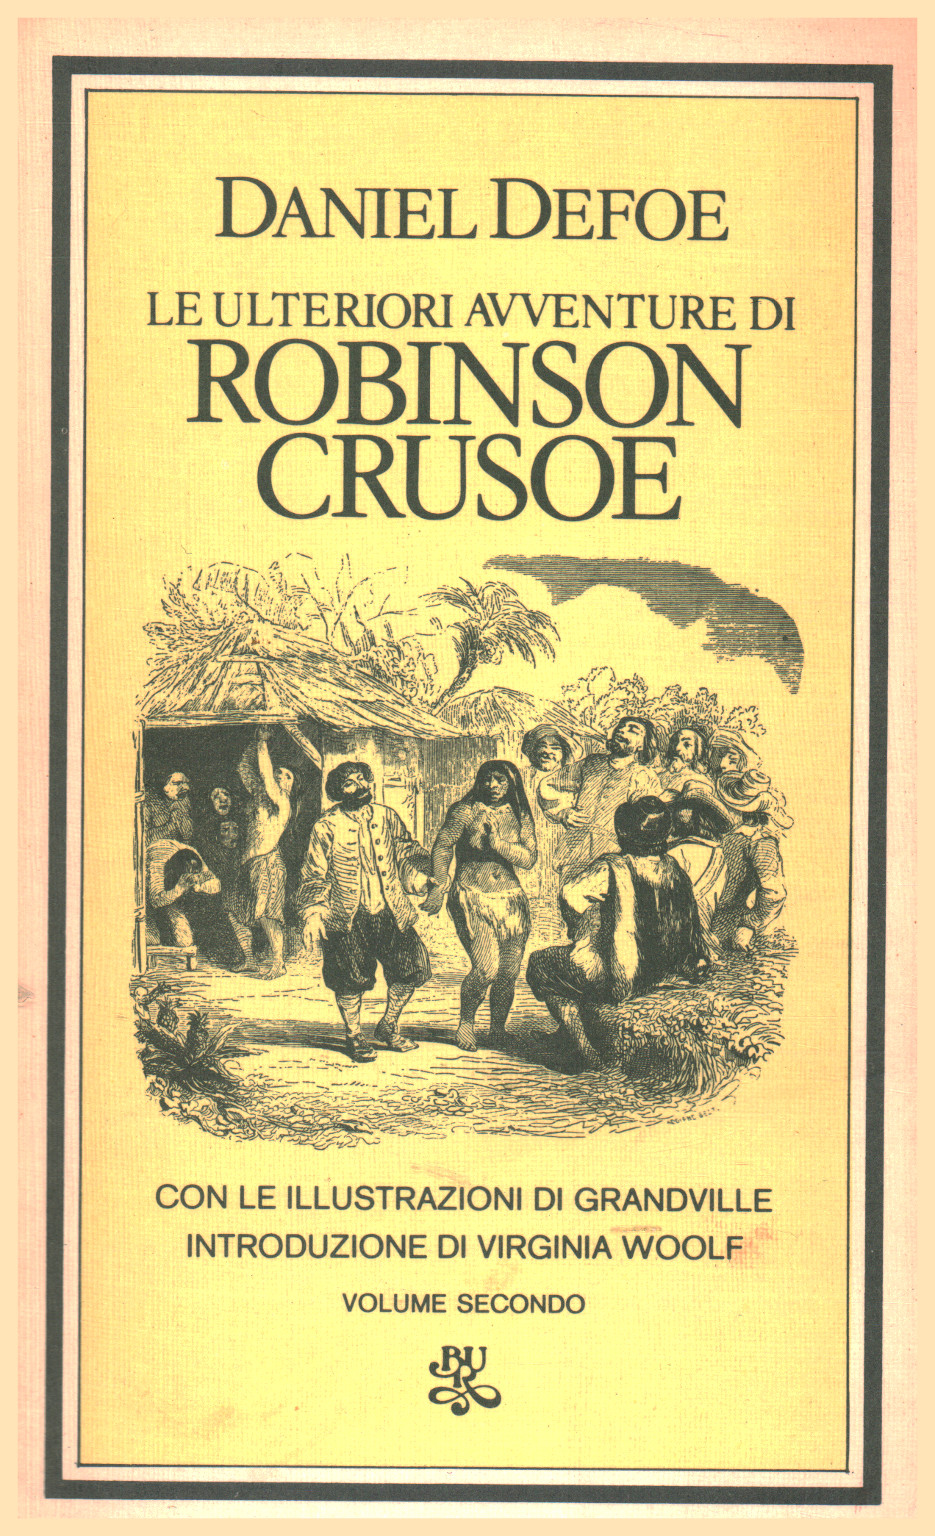 Die weiteren abenteuer von Robinson Crusoe. Lautstärke , Daniel Defoe